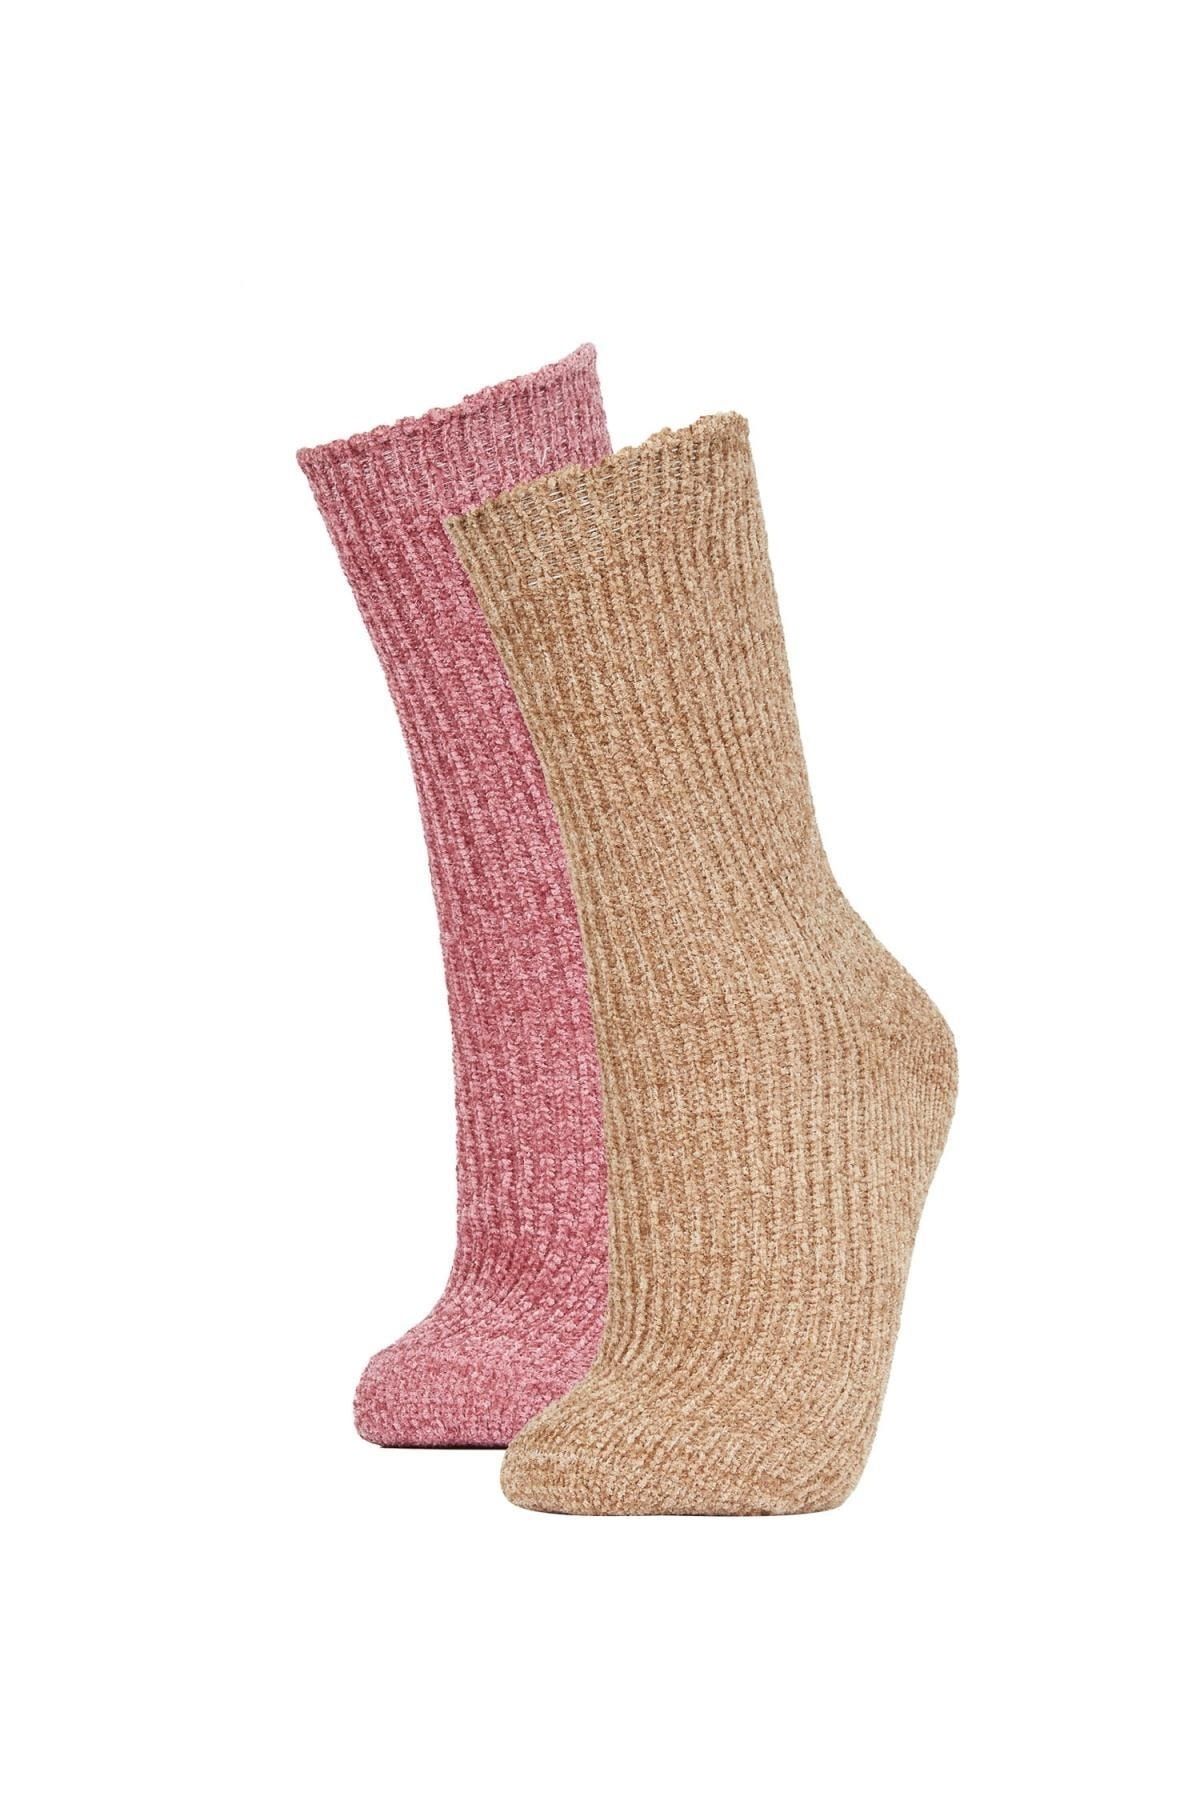 Defacto Kadın 2li Kışlık Çorap Y7668azns